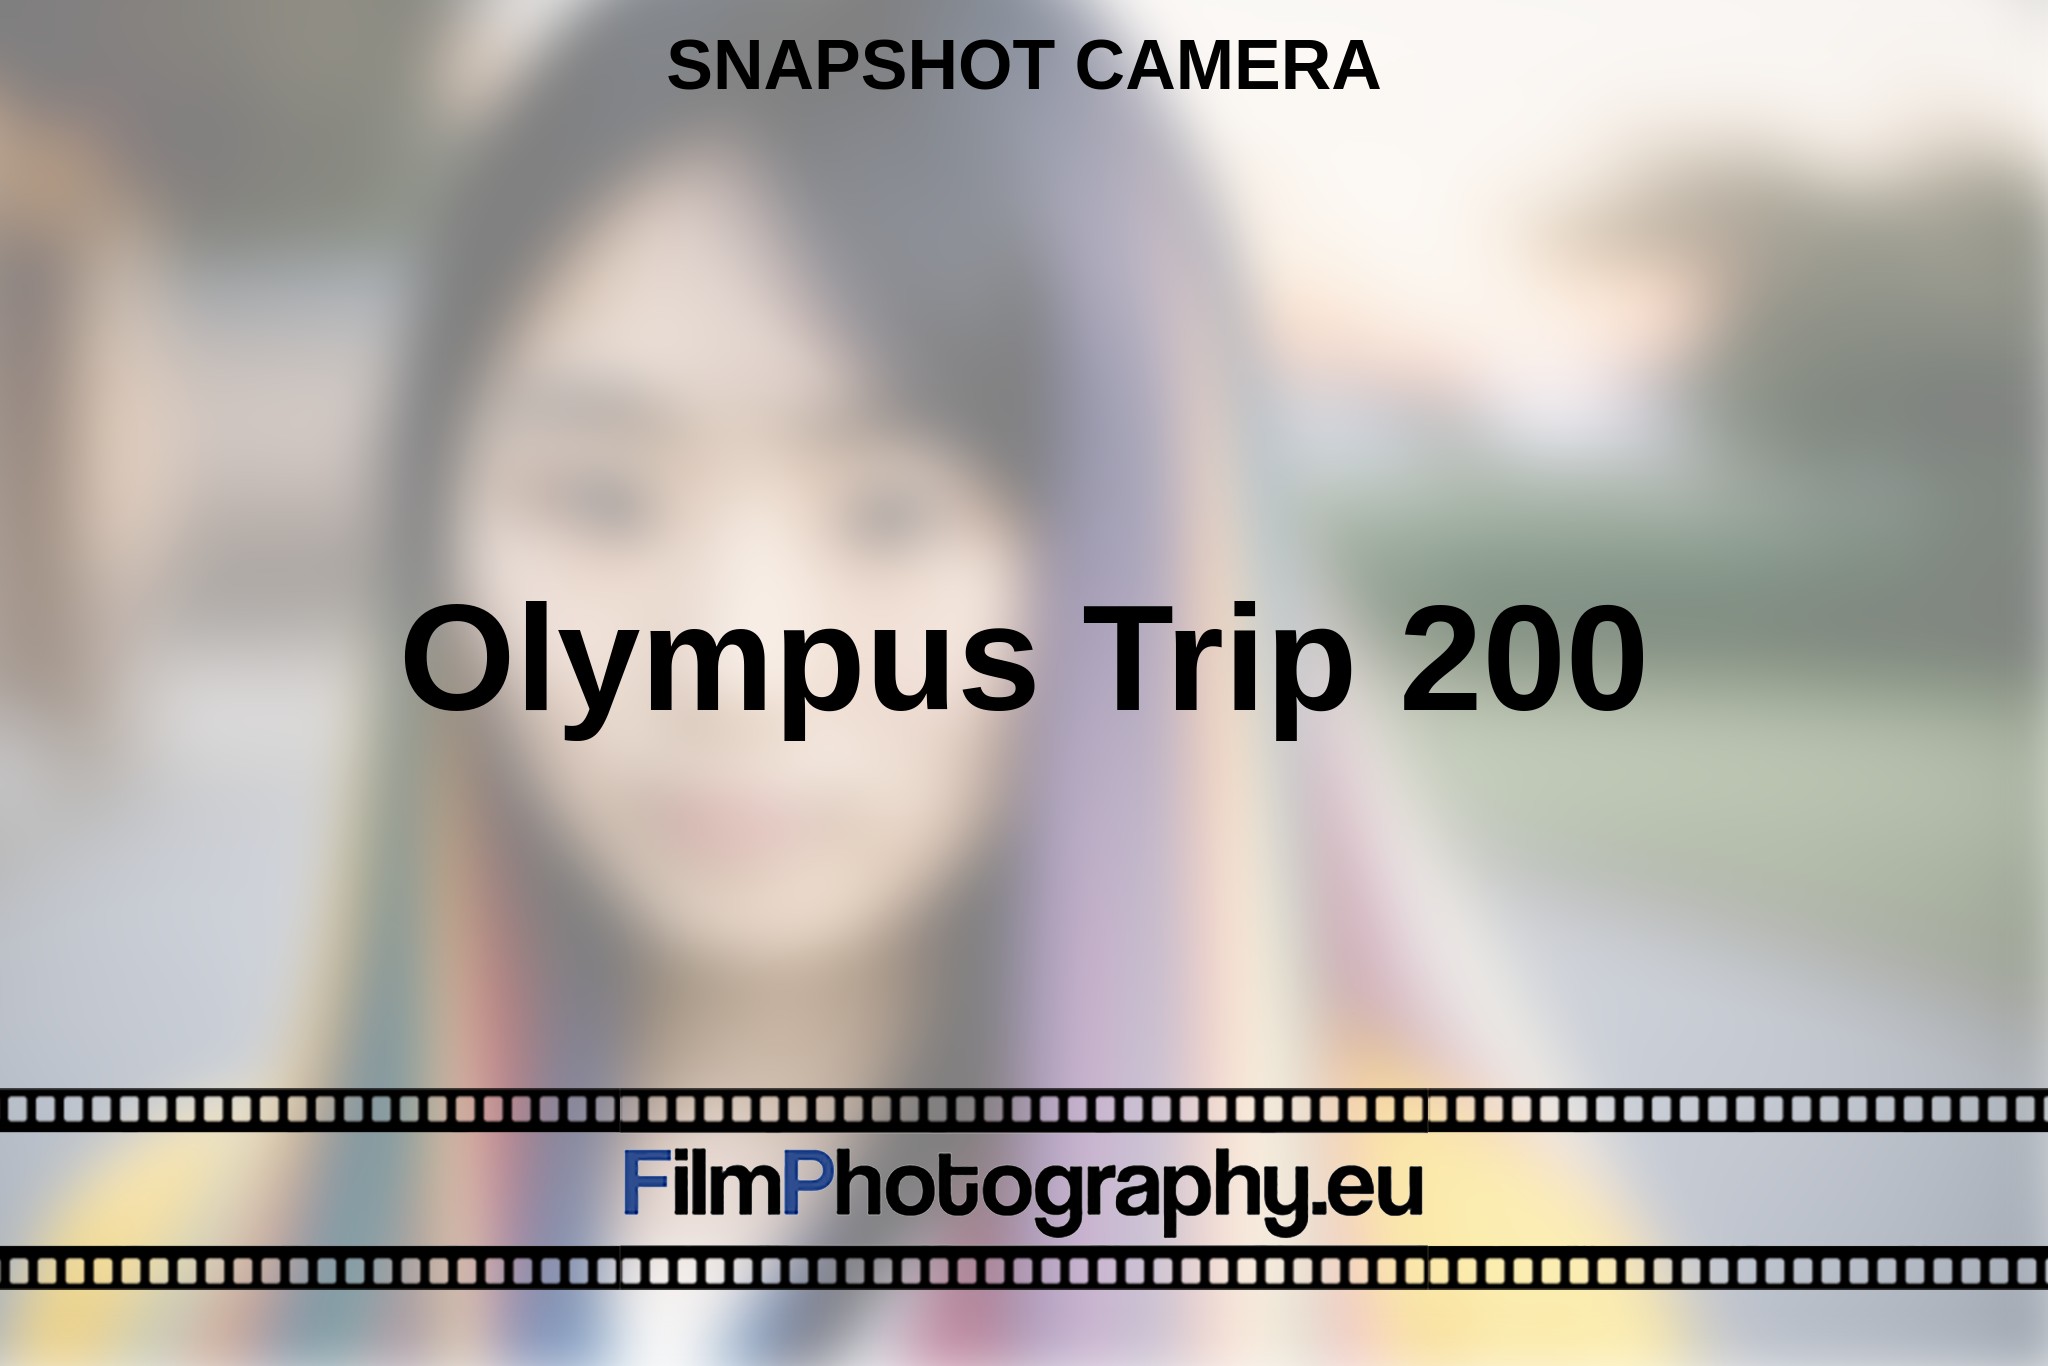 olympus-trip-200-snapshot-camera-en-bnv.jpg